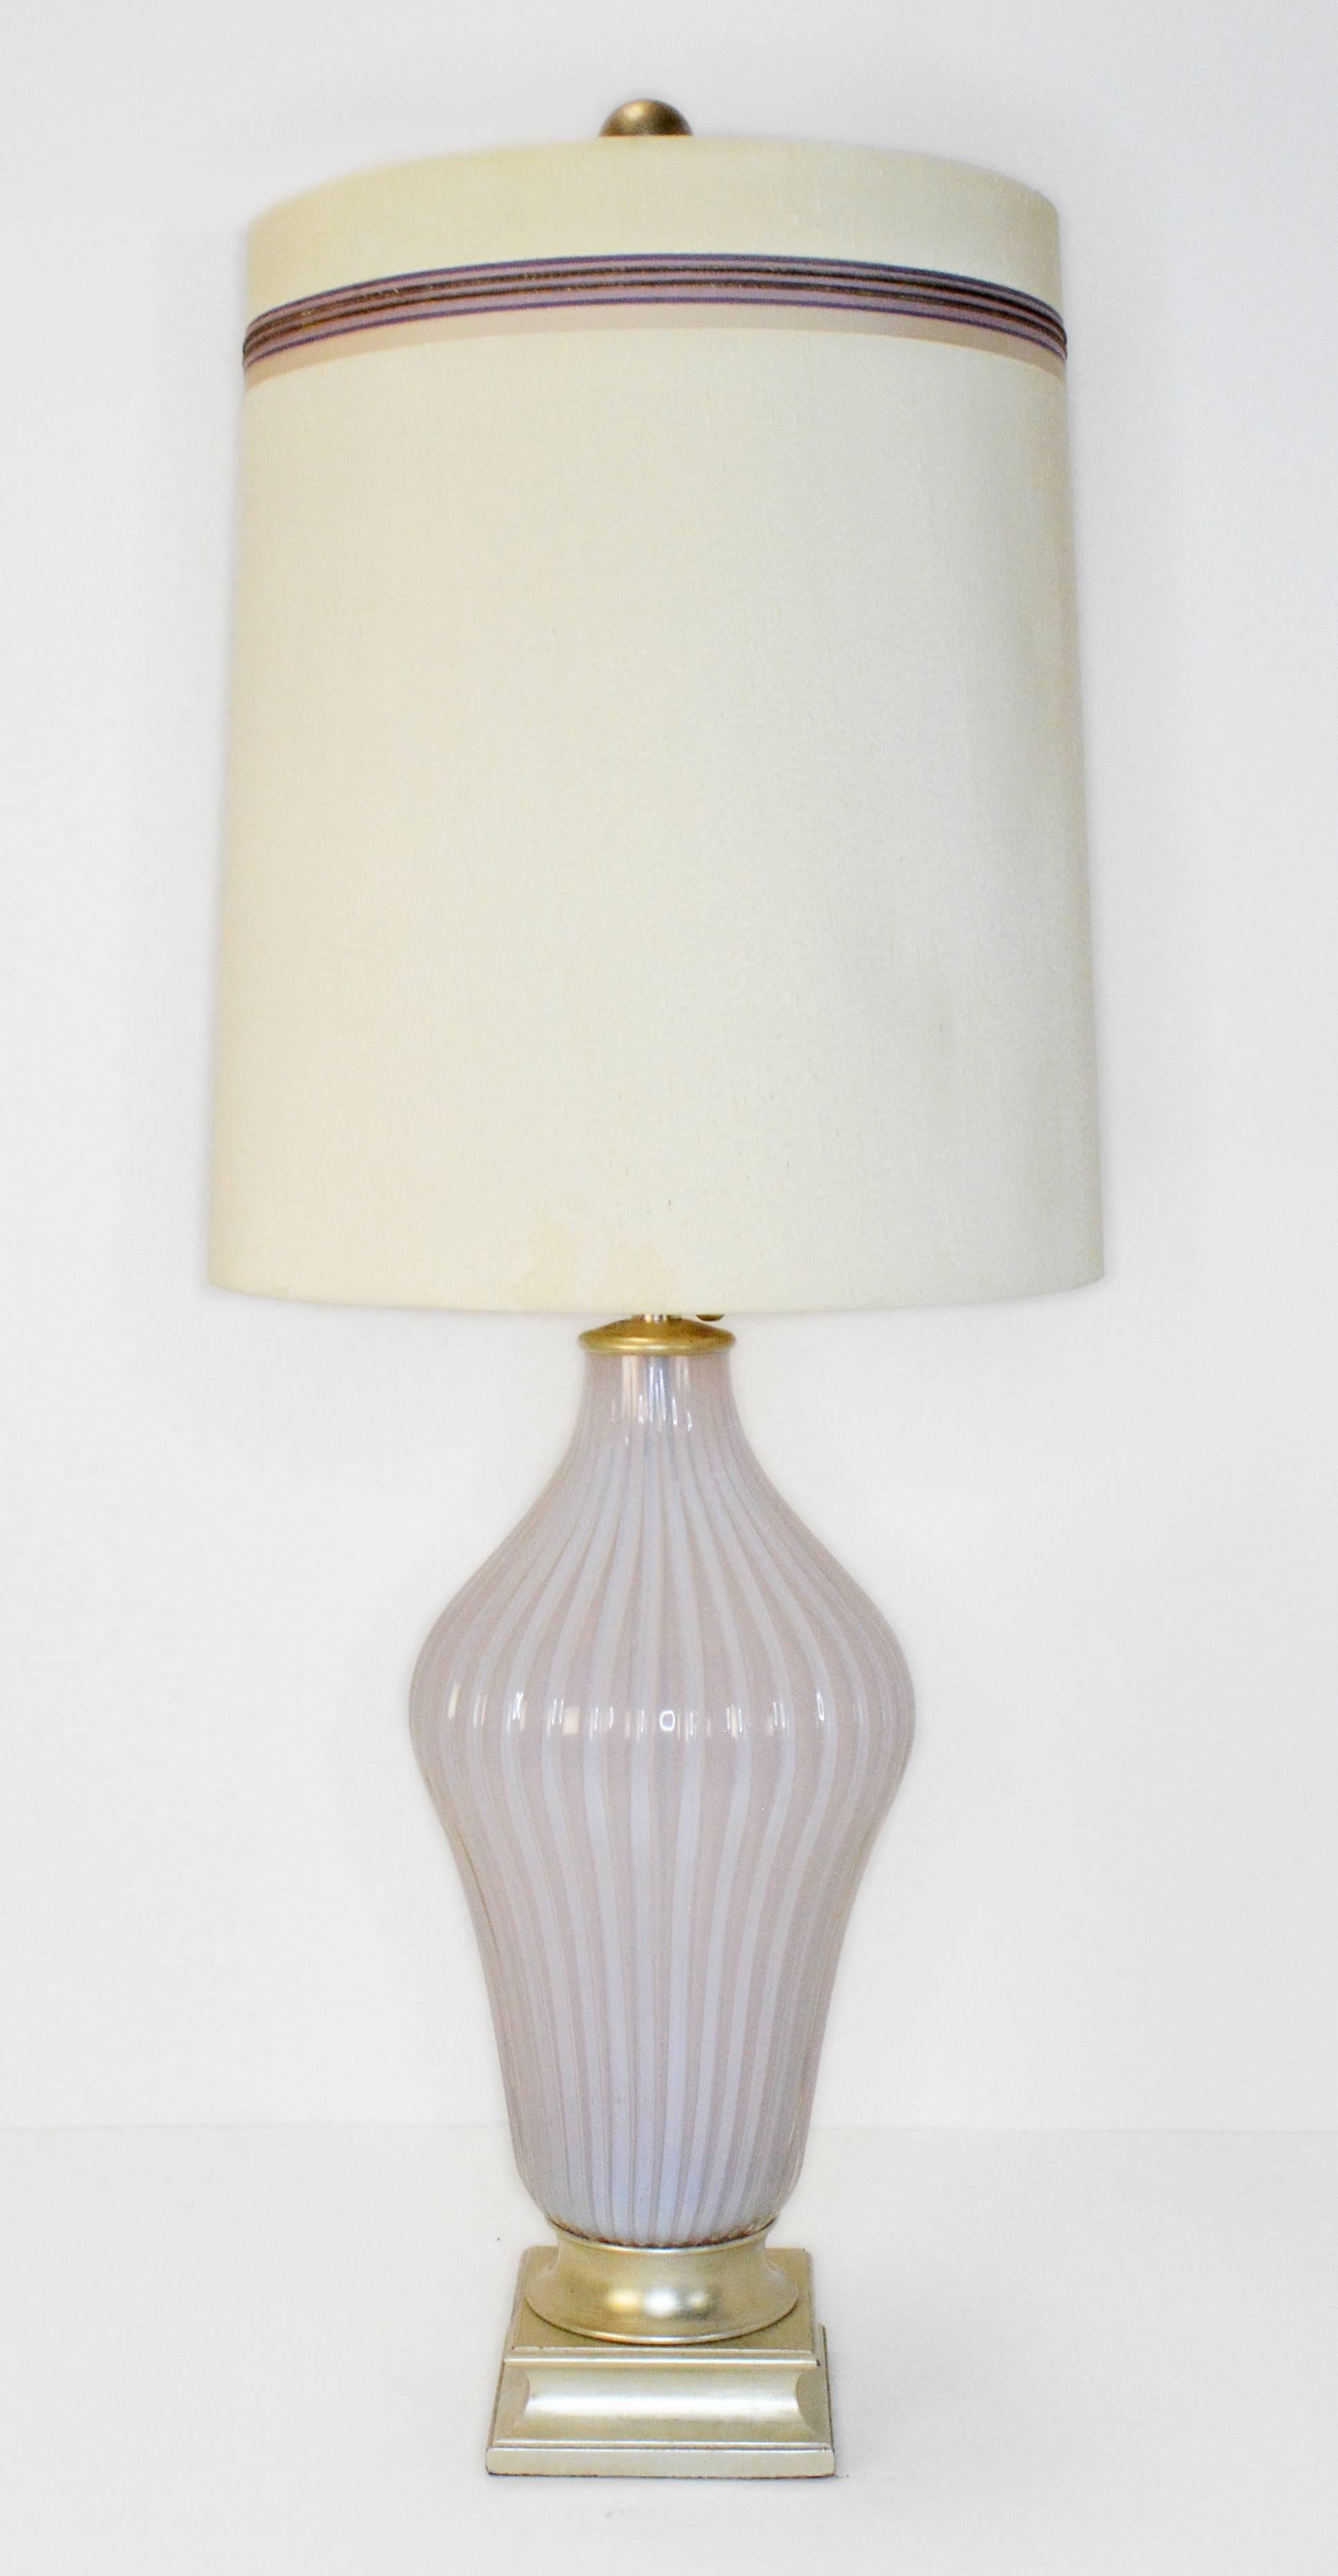 Ein seltenes Paar Murano-Tischlampen von Seguso für Marbro. Gerippte Lampen aus Murano-Opalglas in zartem Rosa, vertrieben von The Marbro Lamp Company, auf originalen Sockeln mit Blattsilber. Das sanfte Leuchten des Opalglases ist erstaunlich. Die